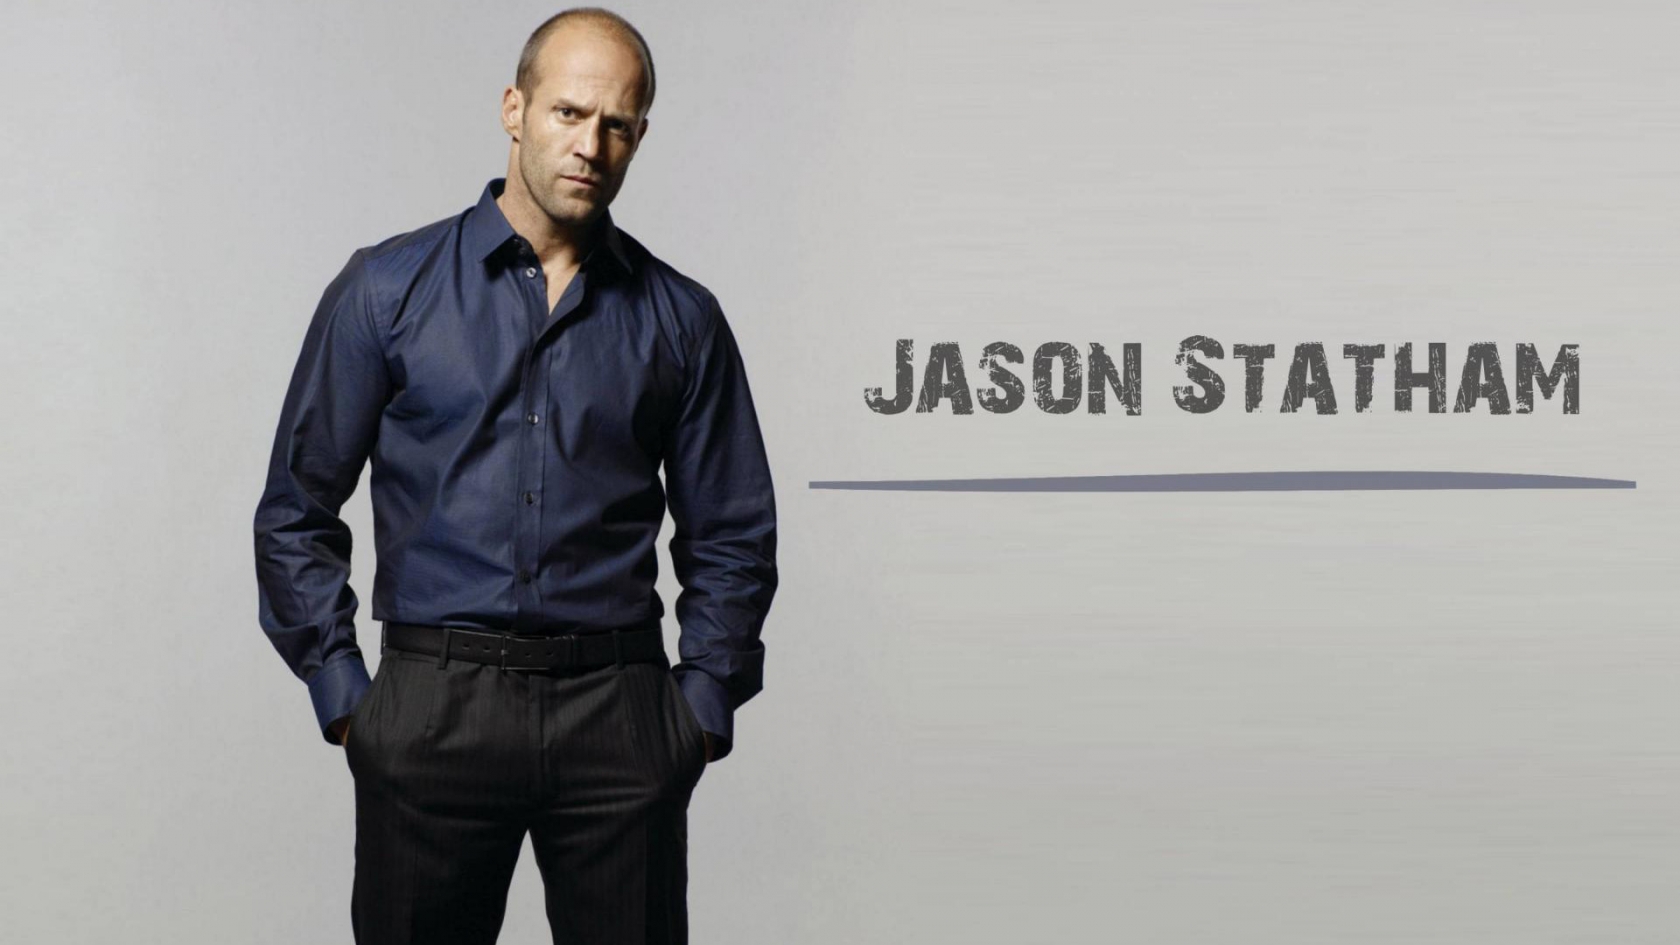 Jason Statham Poster for 1680 x 945 HDTV resolution